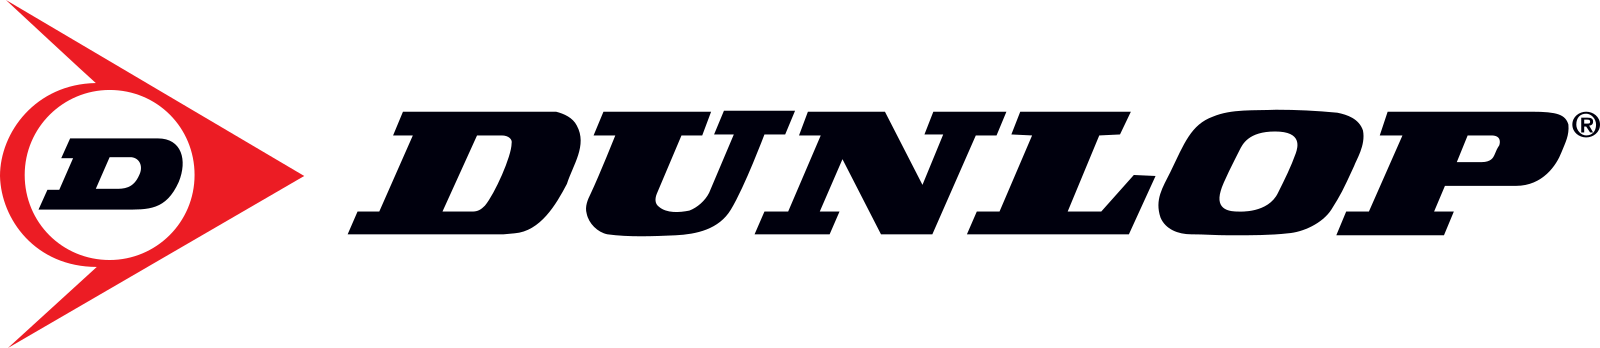 Dunlop Pneus Logo - PNG e Vetor - Download de Logo